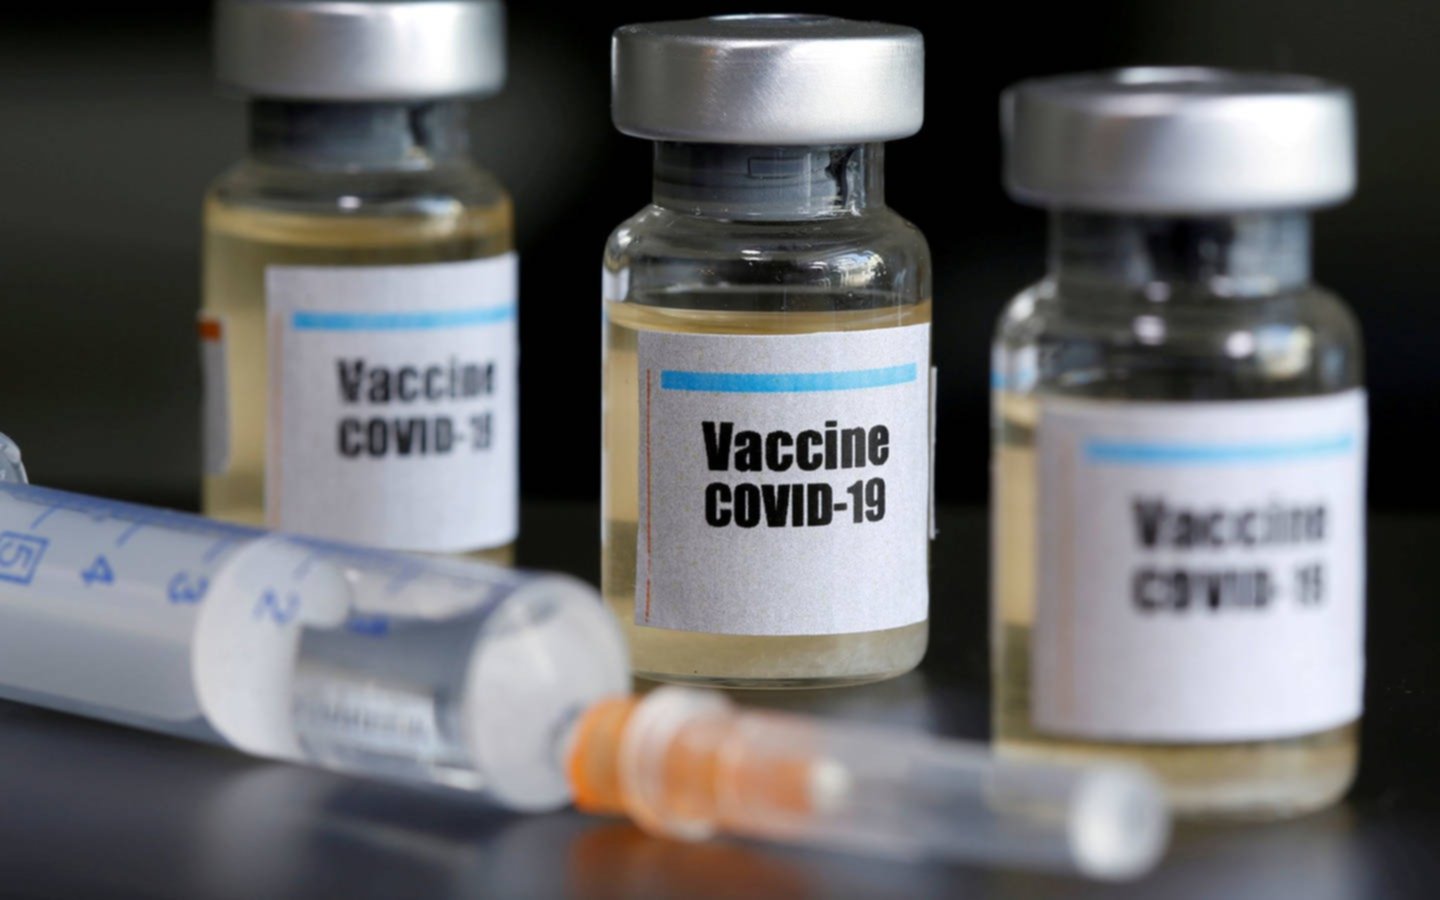 La vacuna de Moderna mostró altos niveles de anticuerpos en adultos mayores tras un estudio preliminar